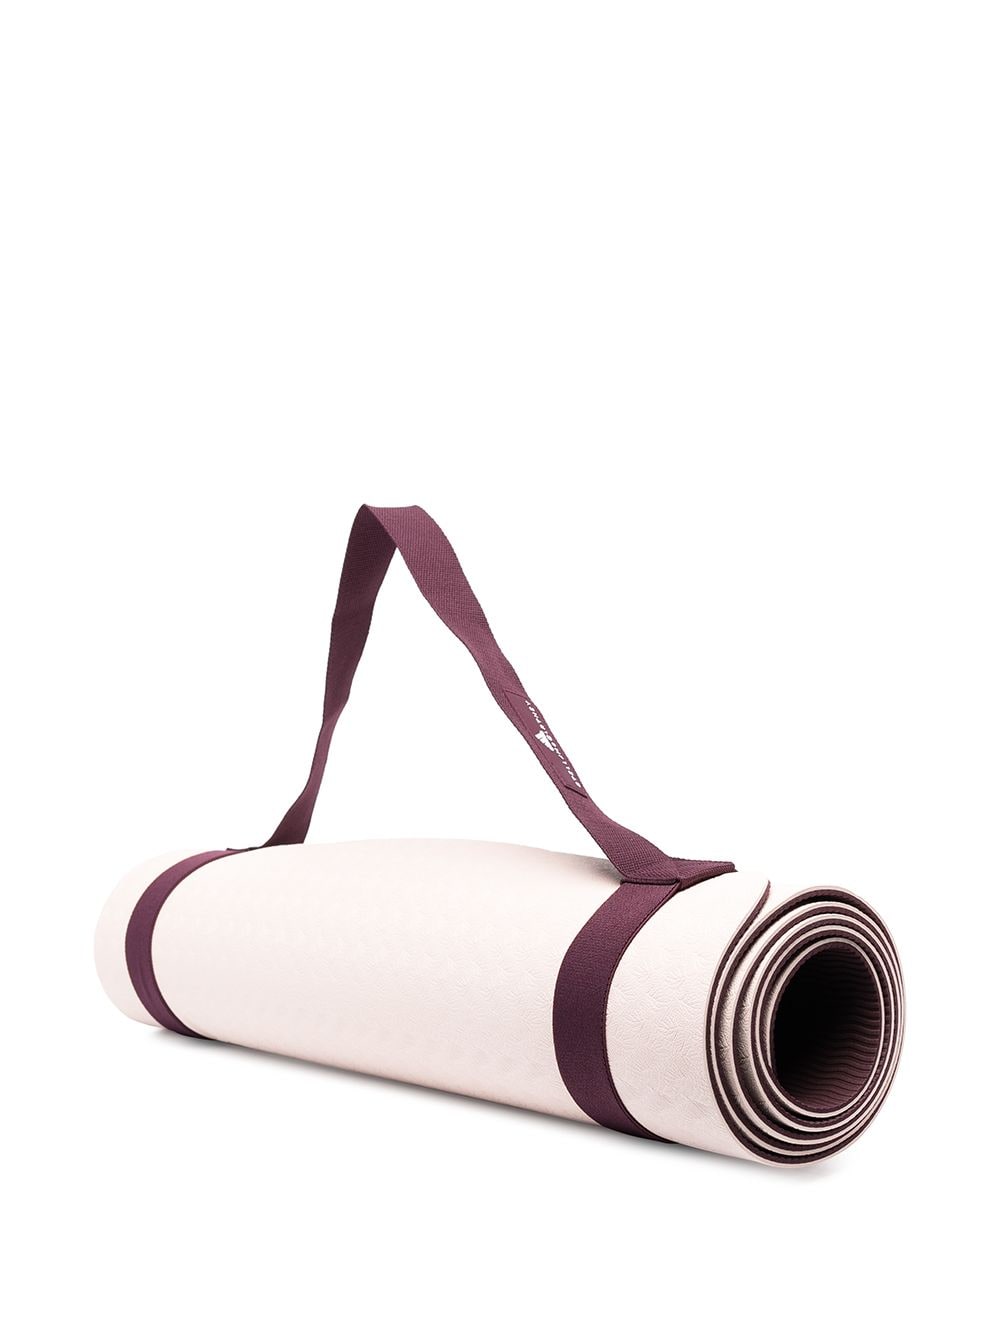 фото Adidas by stella mccartney двухцветный коврик для йоги